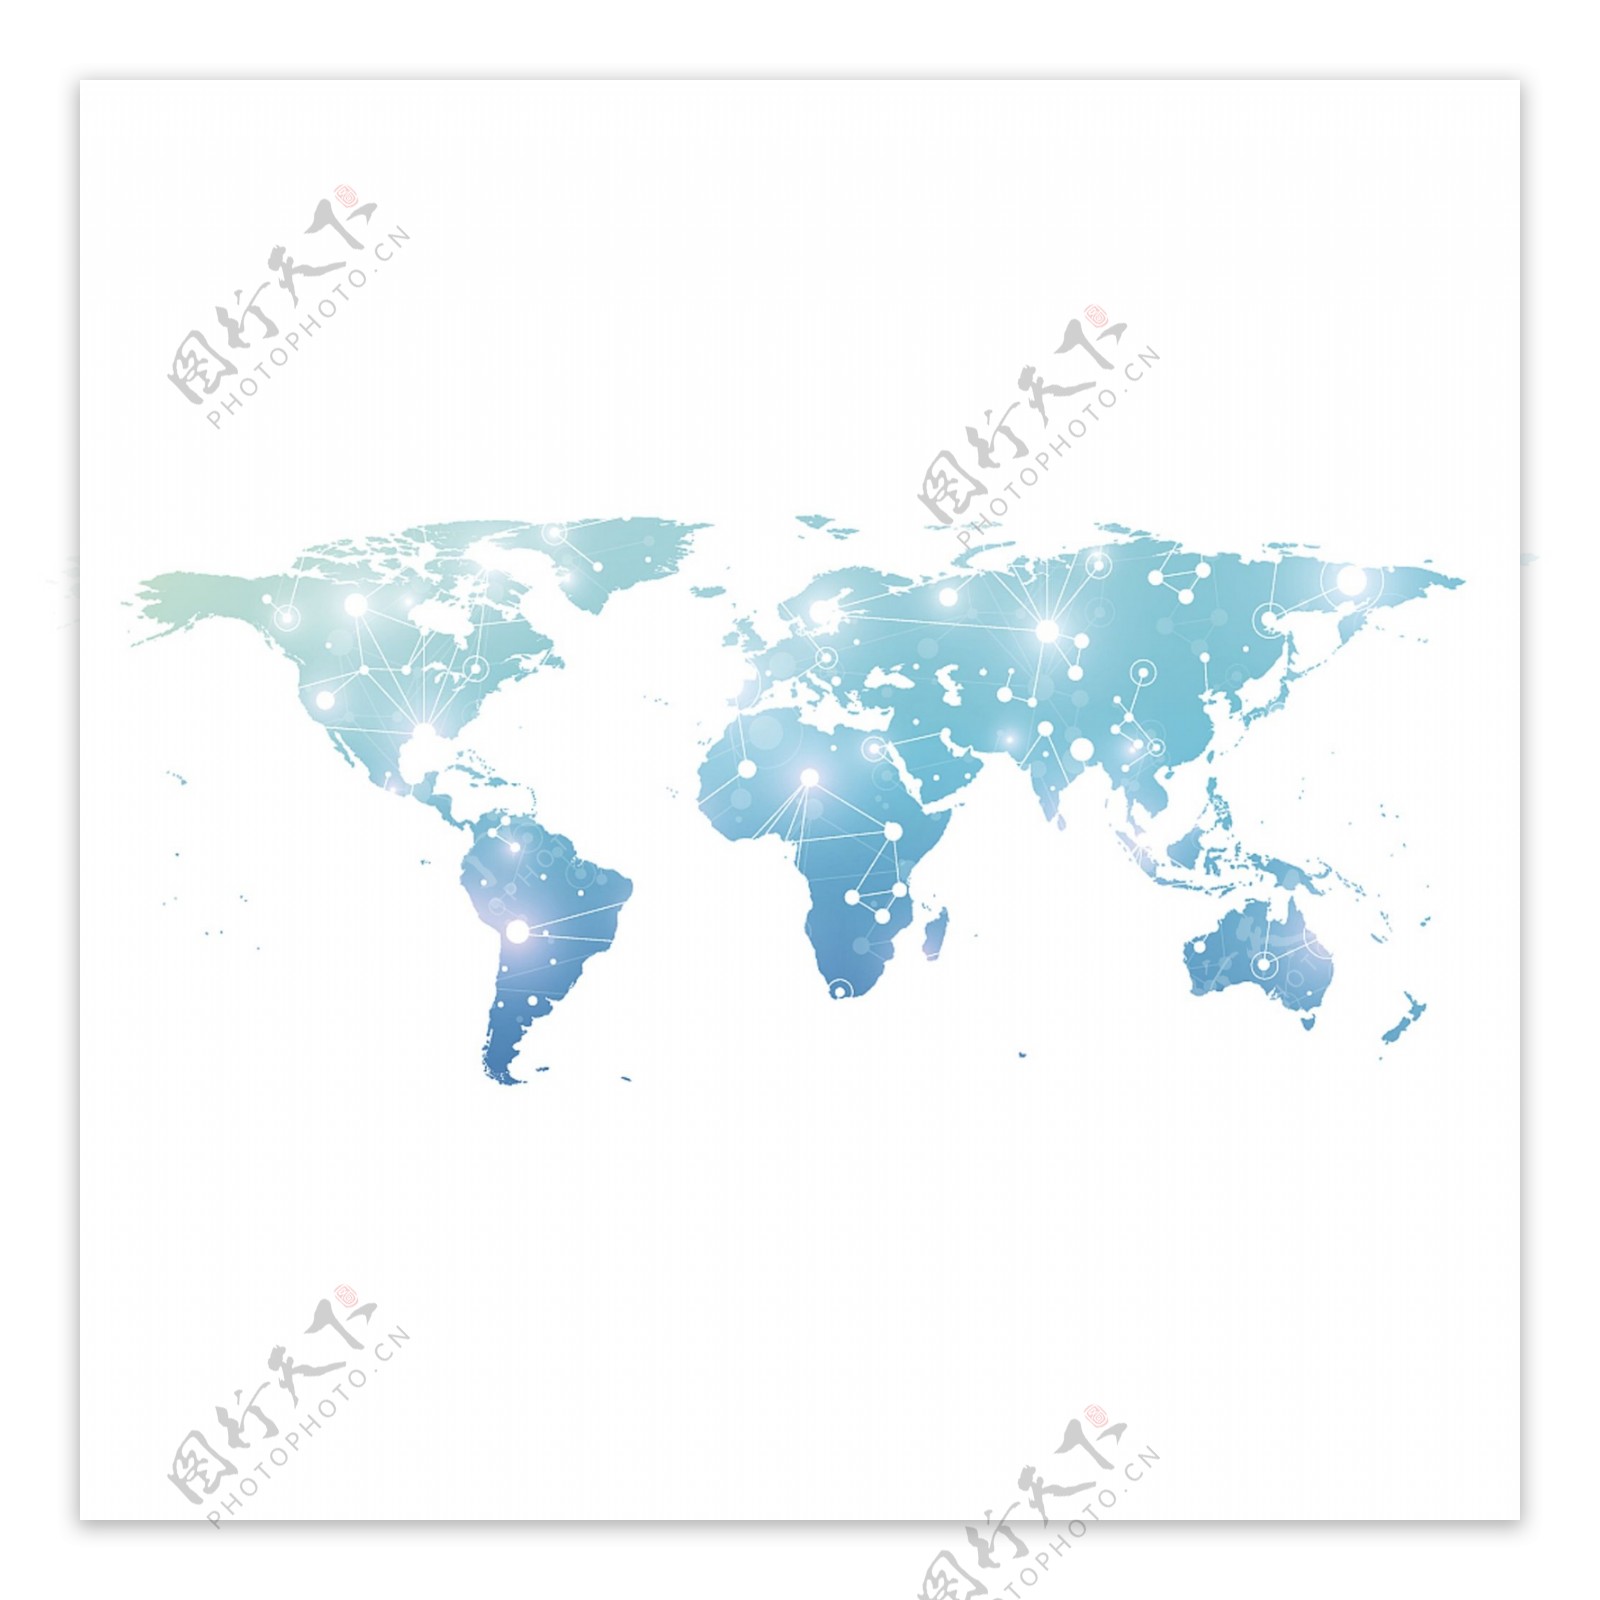 世界地图矢量图片设计素材